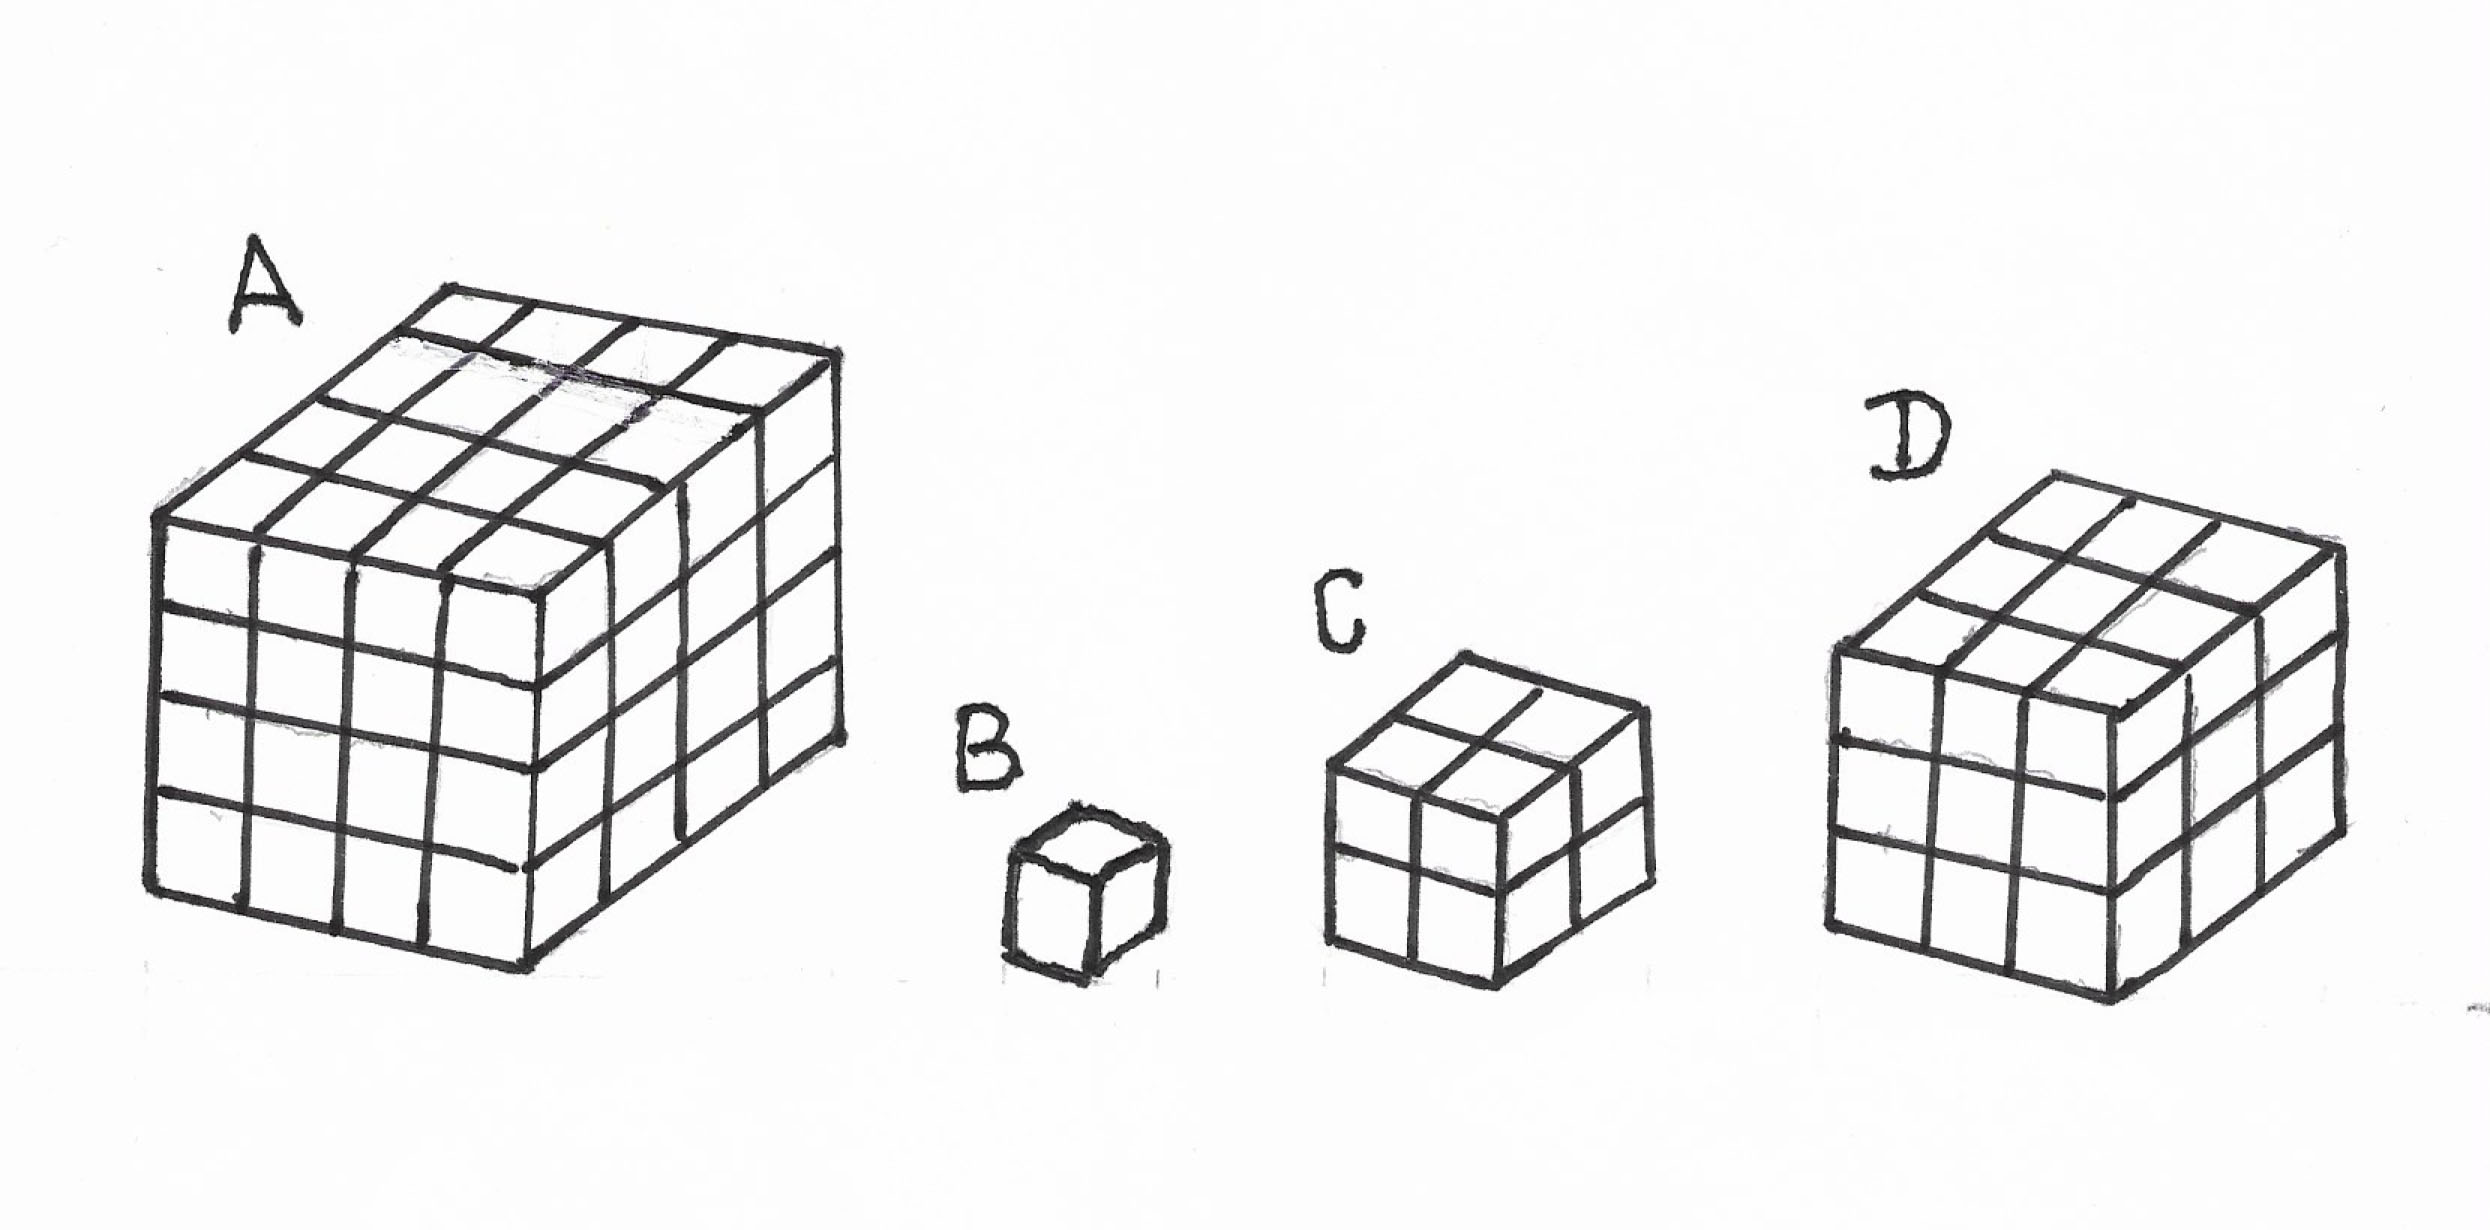 Из одинаковых кубиков изобразили стороны коробки. Фигуры из одинаковых кубиков. Игральный кубик развертка. Алгоритм собирания кубика Рубика 3x3.